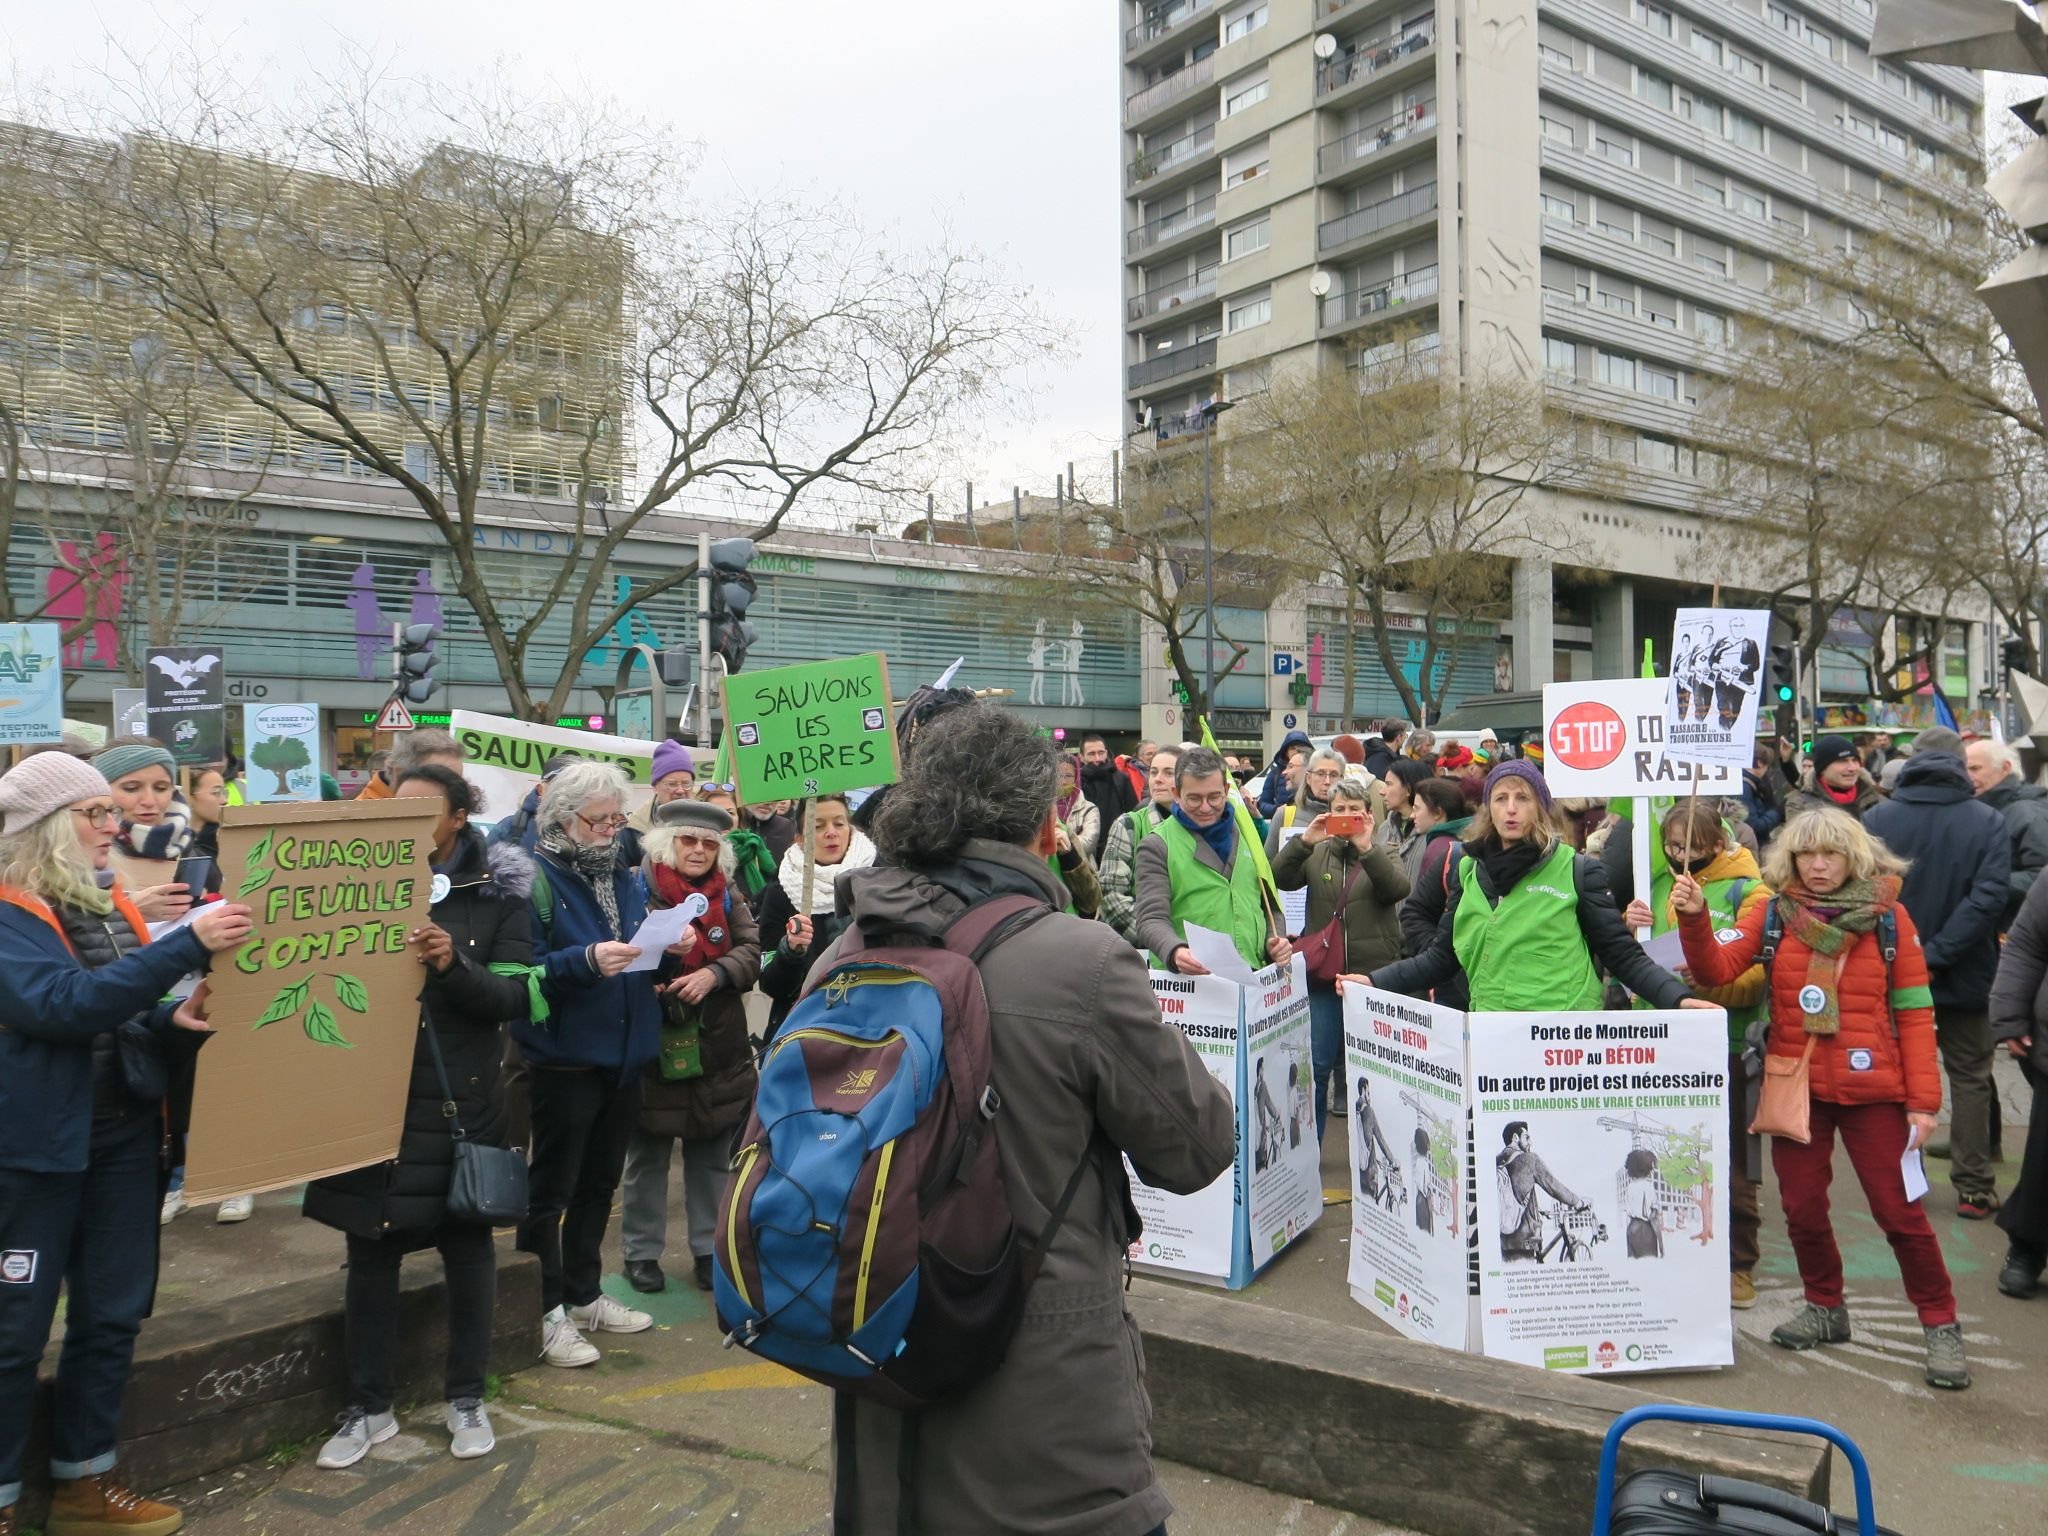 Montreuil (Seine-Saint-Denis), ce samedi. Environ 200 personnes ont manifesté pour dire non à la coupe d'arbres dans des projets urbains partout en Île-de-France. LP/A.L.